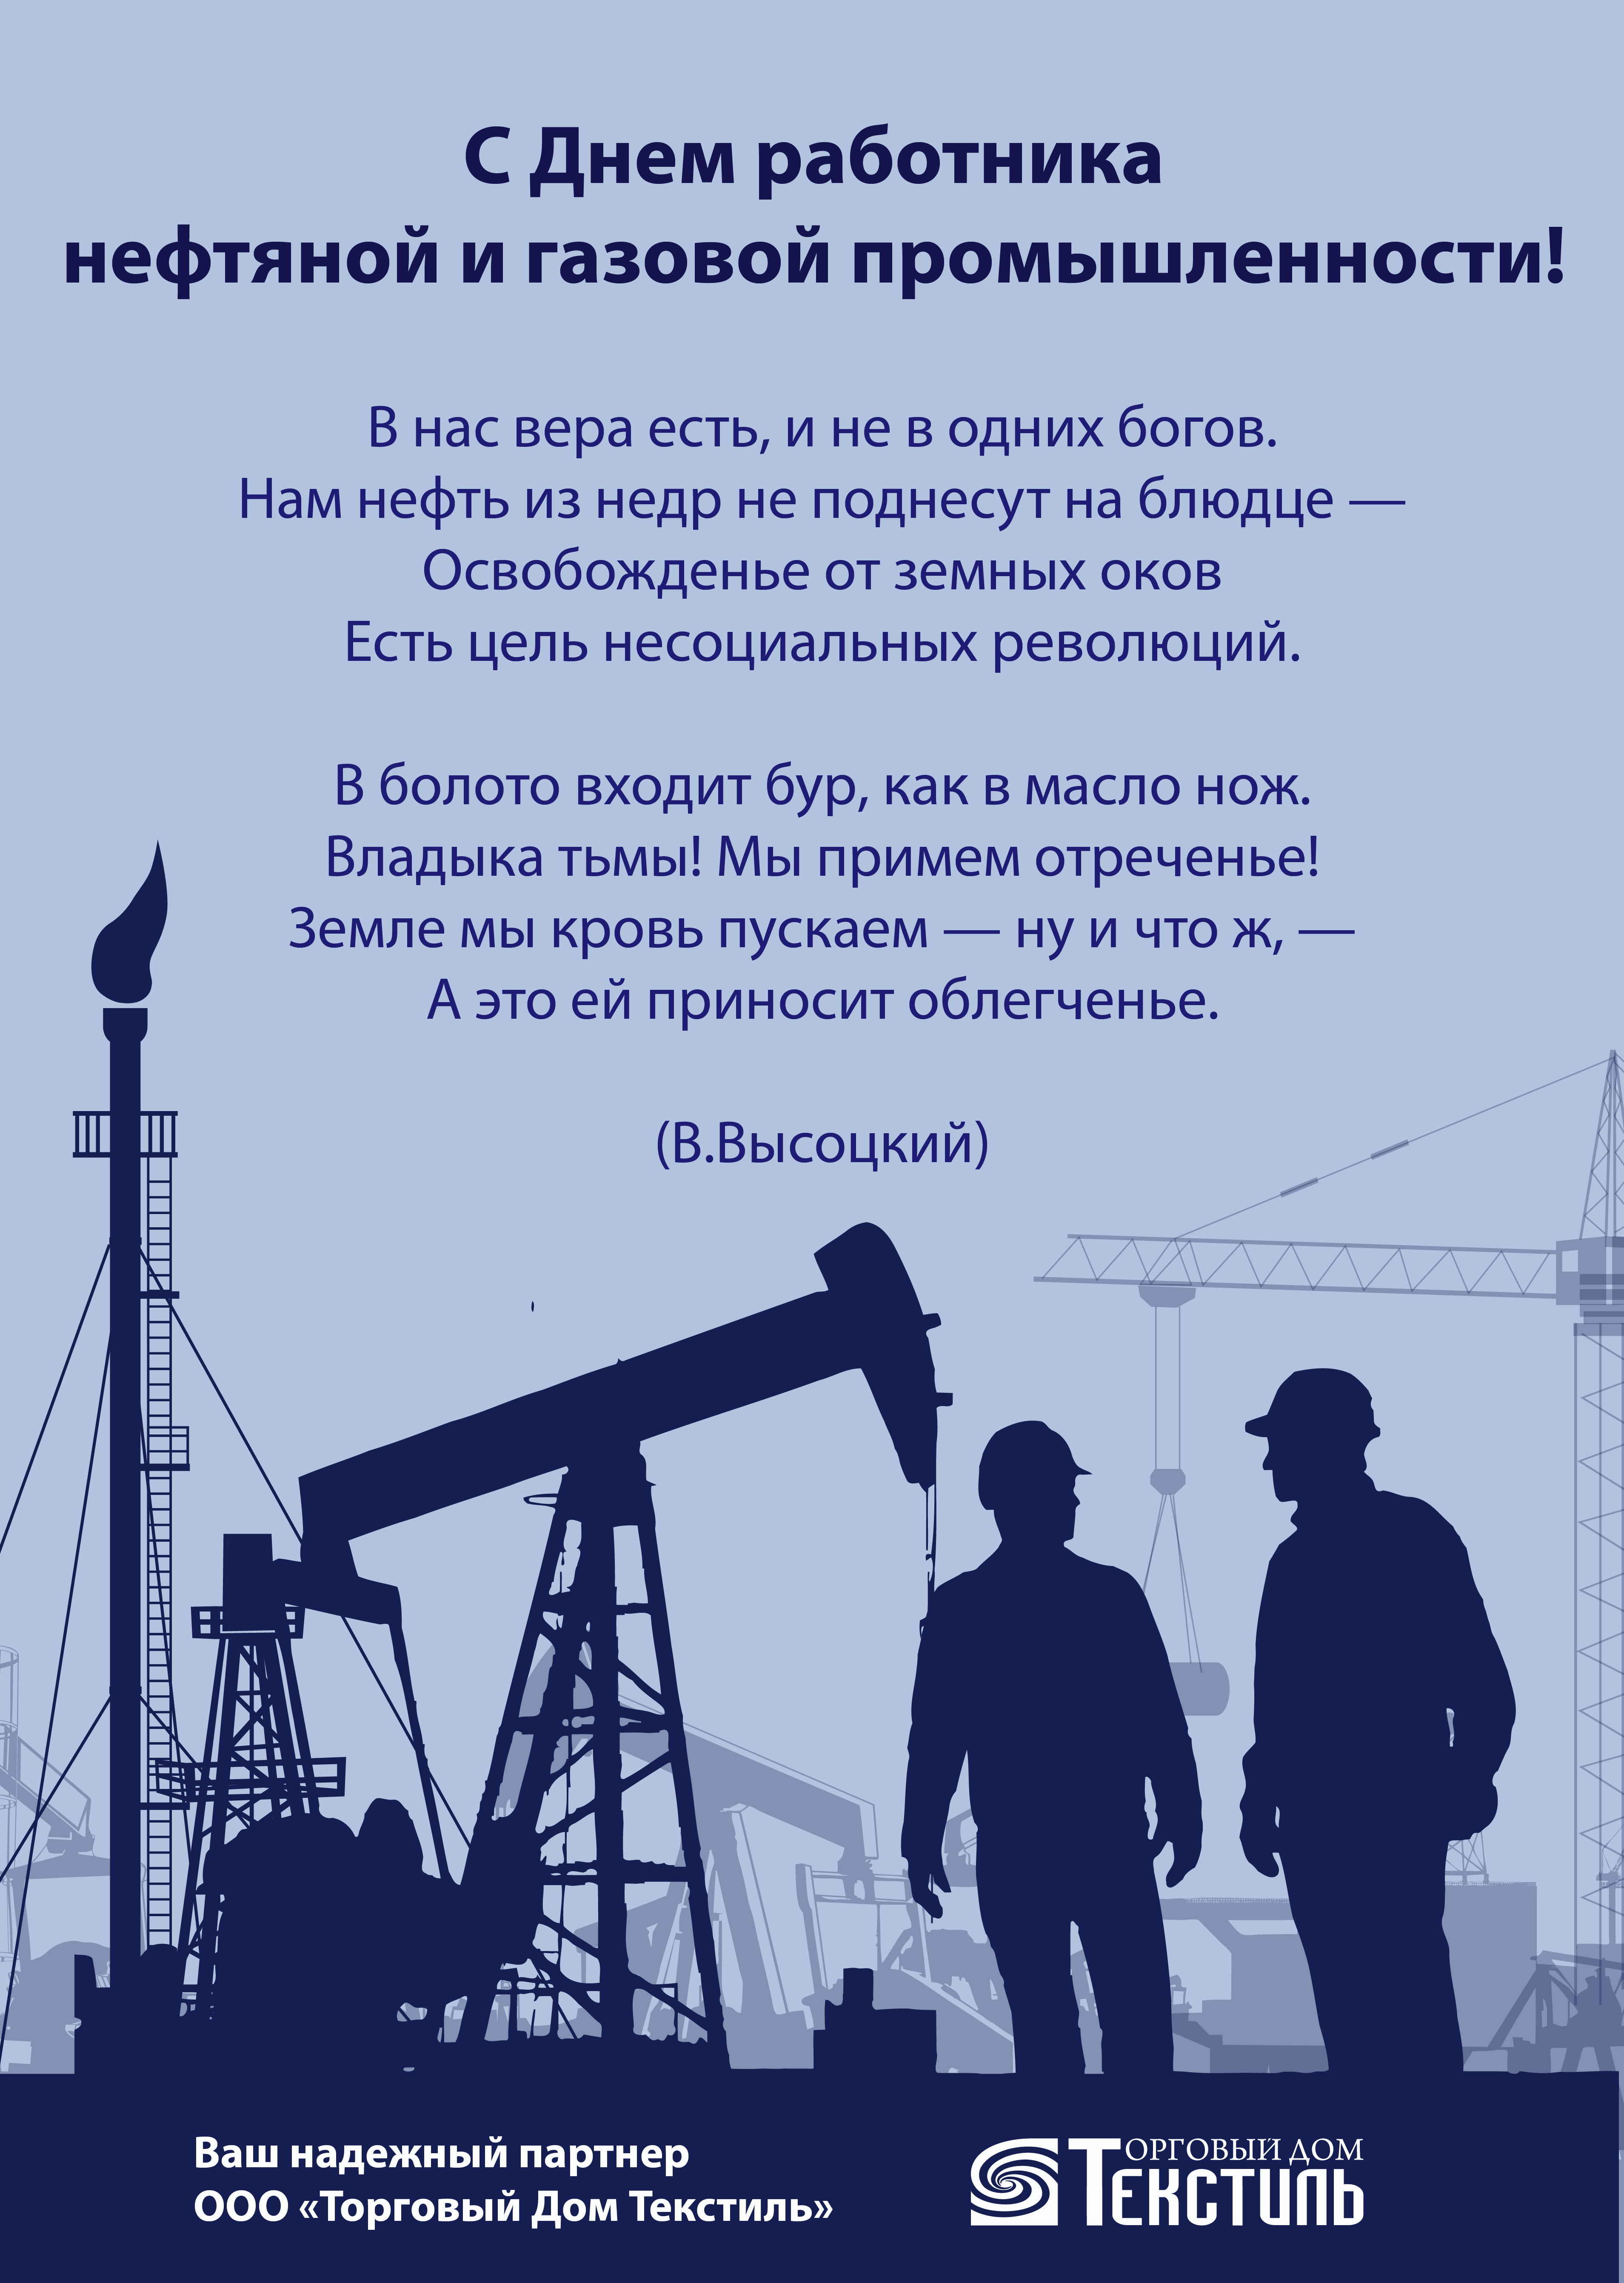 с днем нефтяной и газовой промышленности открытки роснефть практически